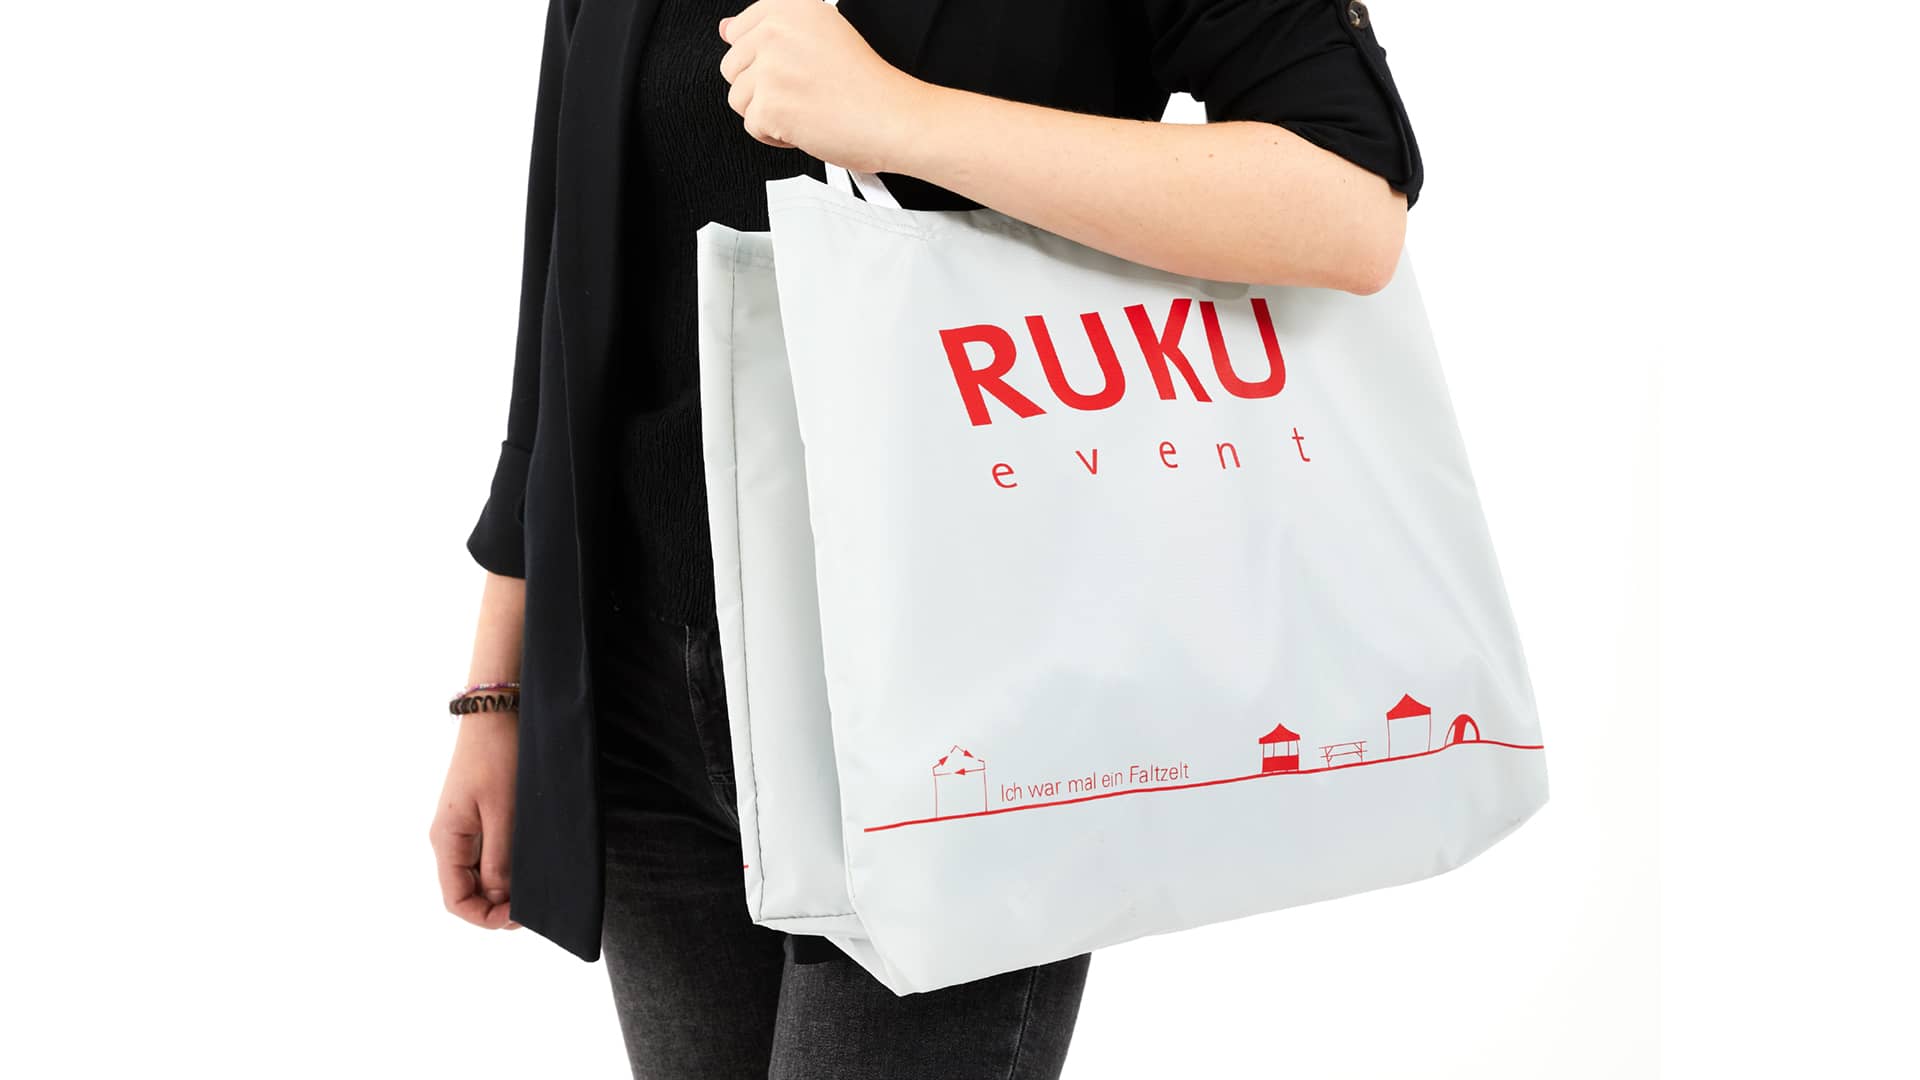 Die nachhaltige RUKUevent Einkaufstasche in der Farbe hellgrau wird von einer Person um die Schulter getragen.